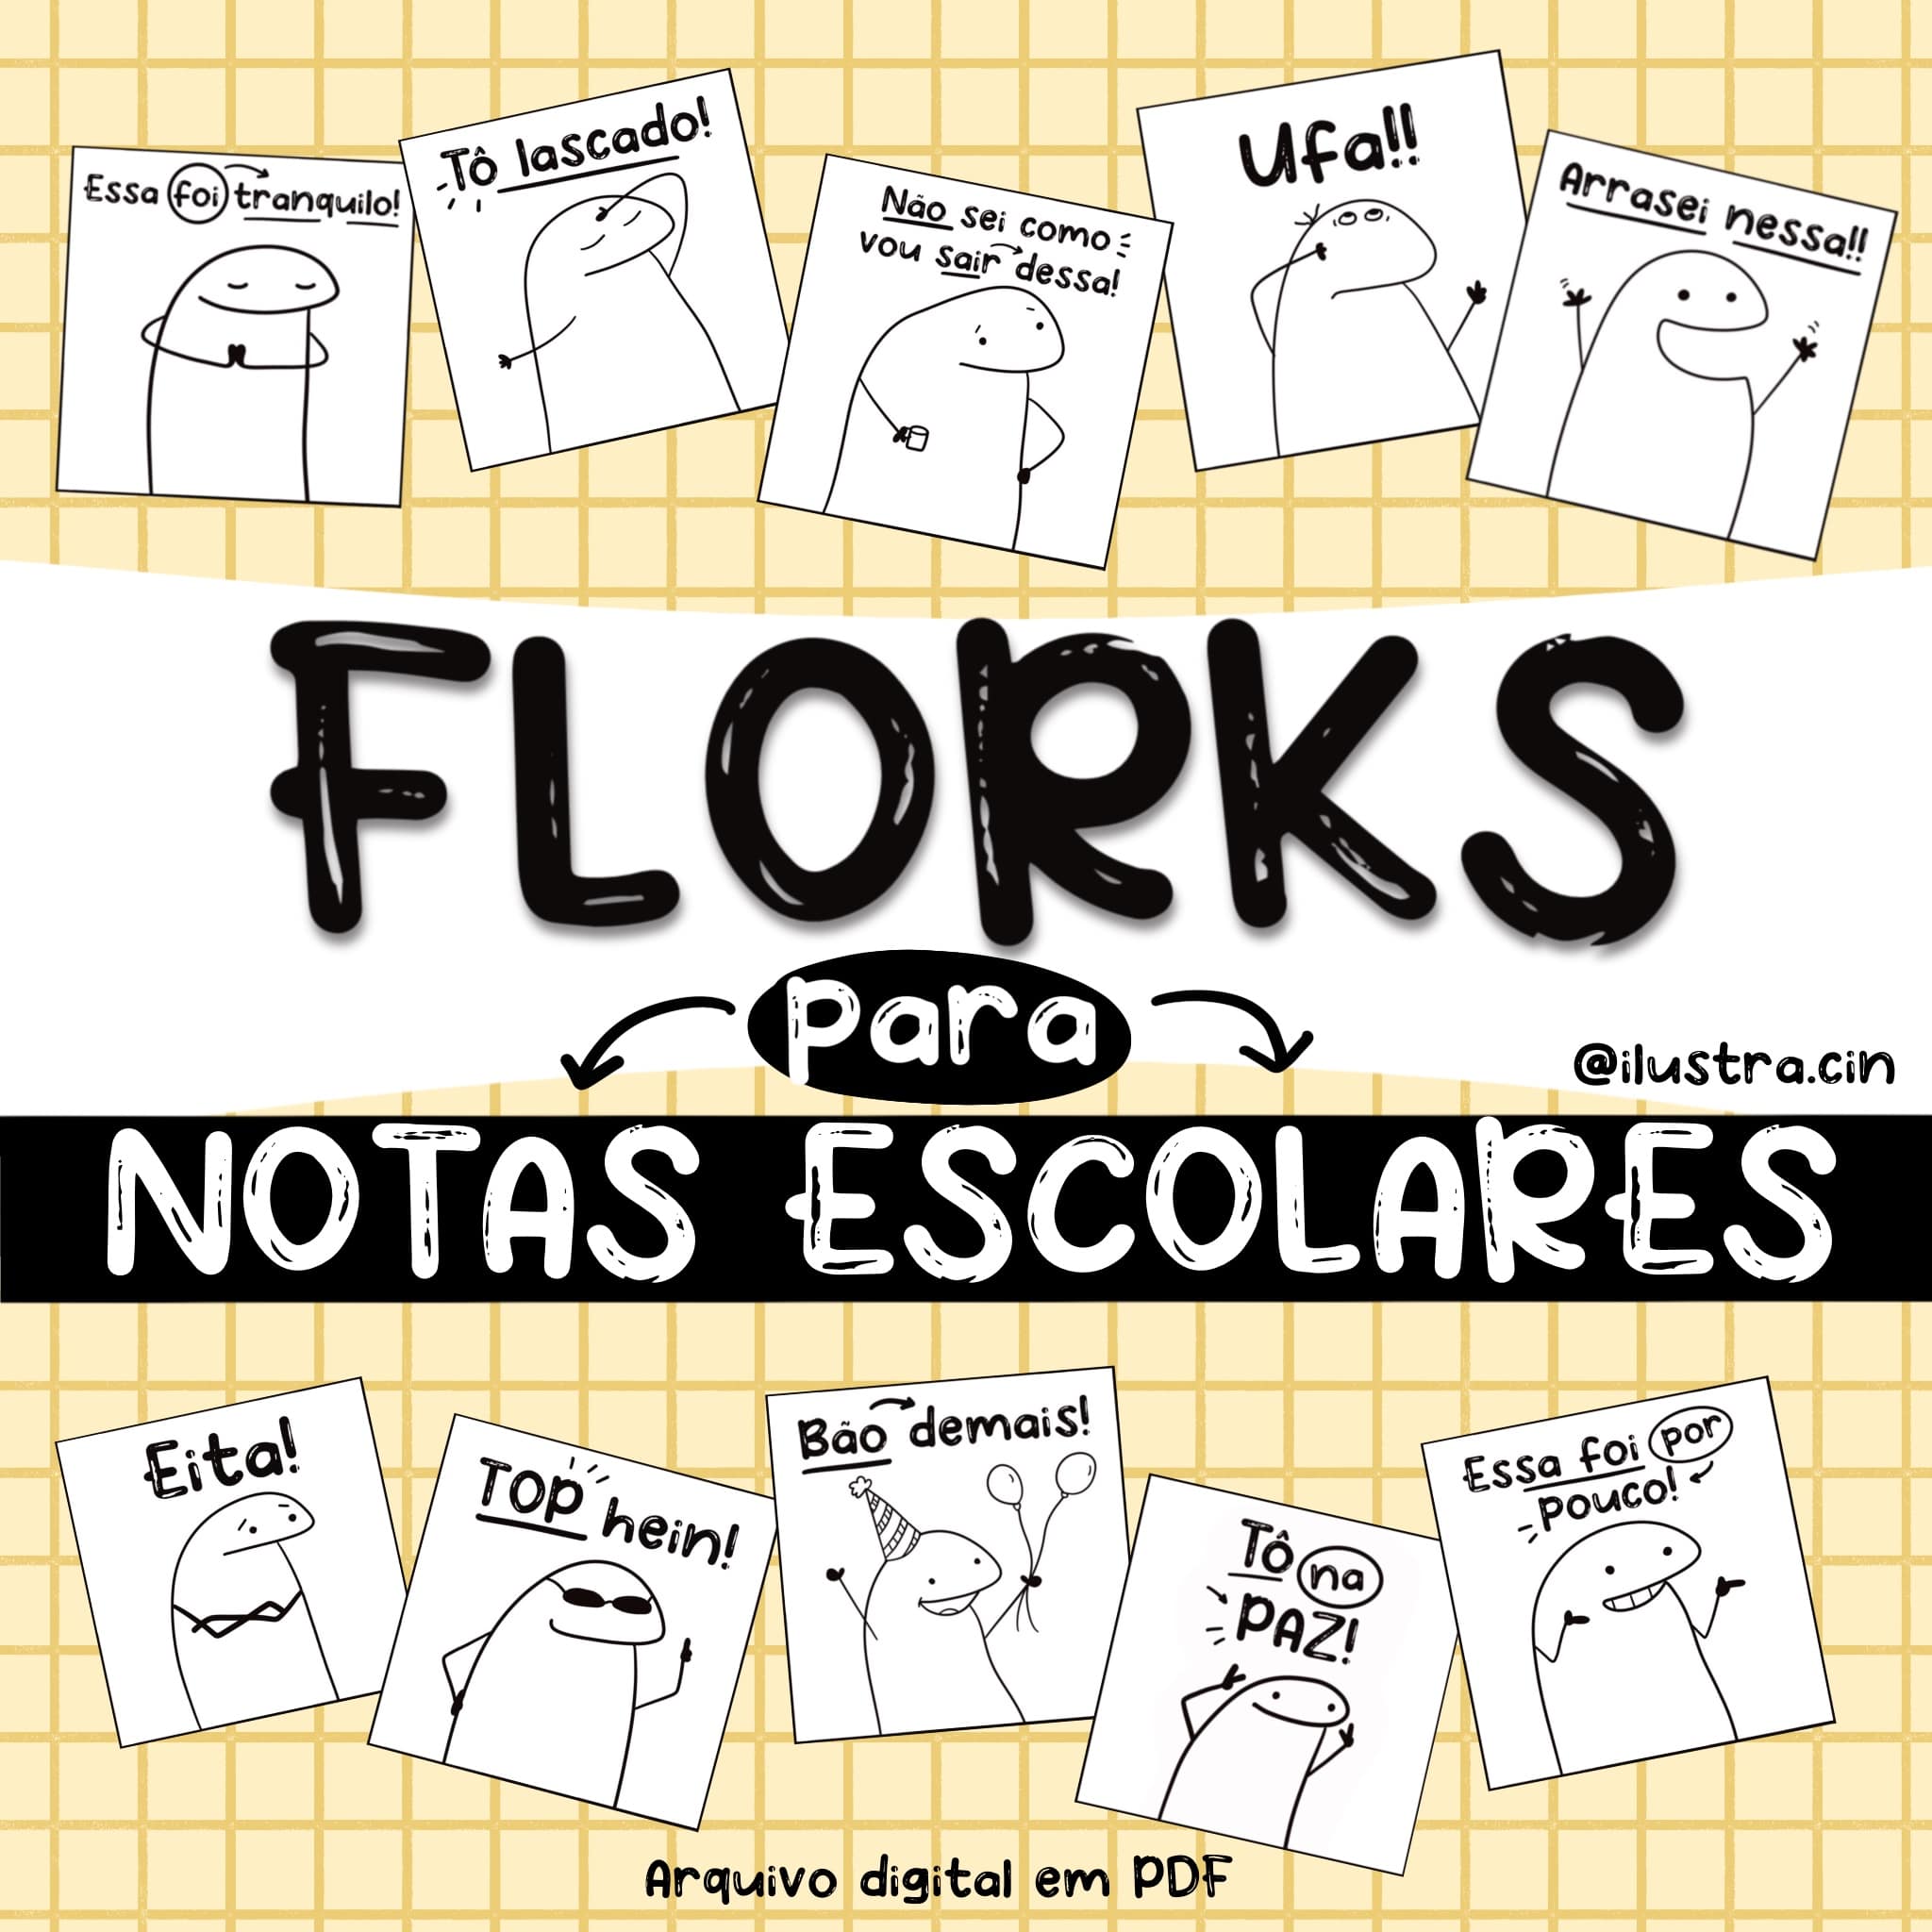 30 Flork para Notas Escolares ( Arquivo Digital)